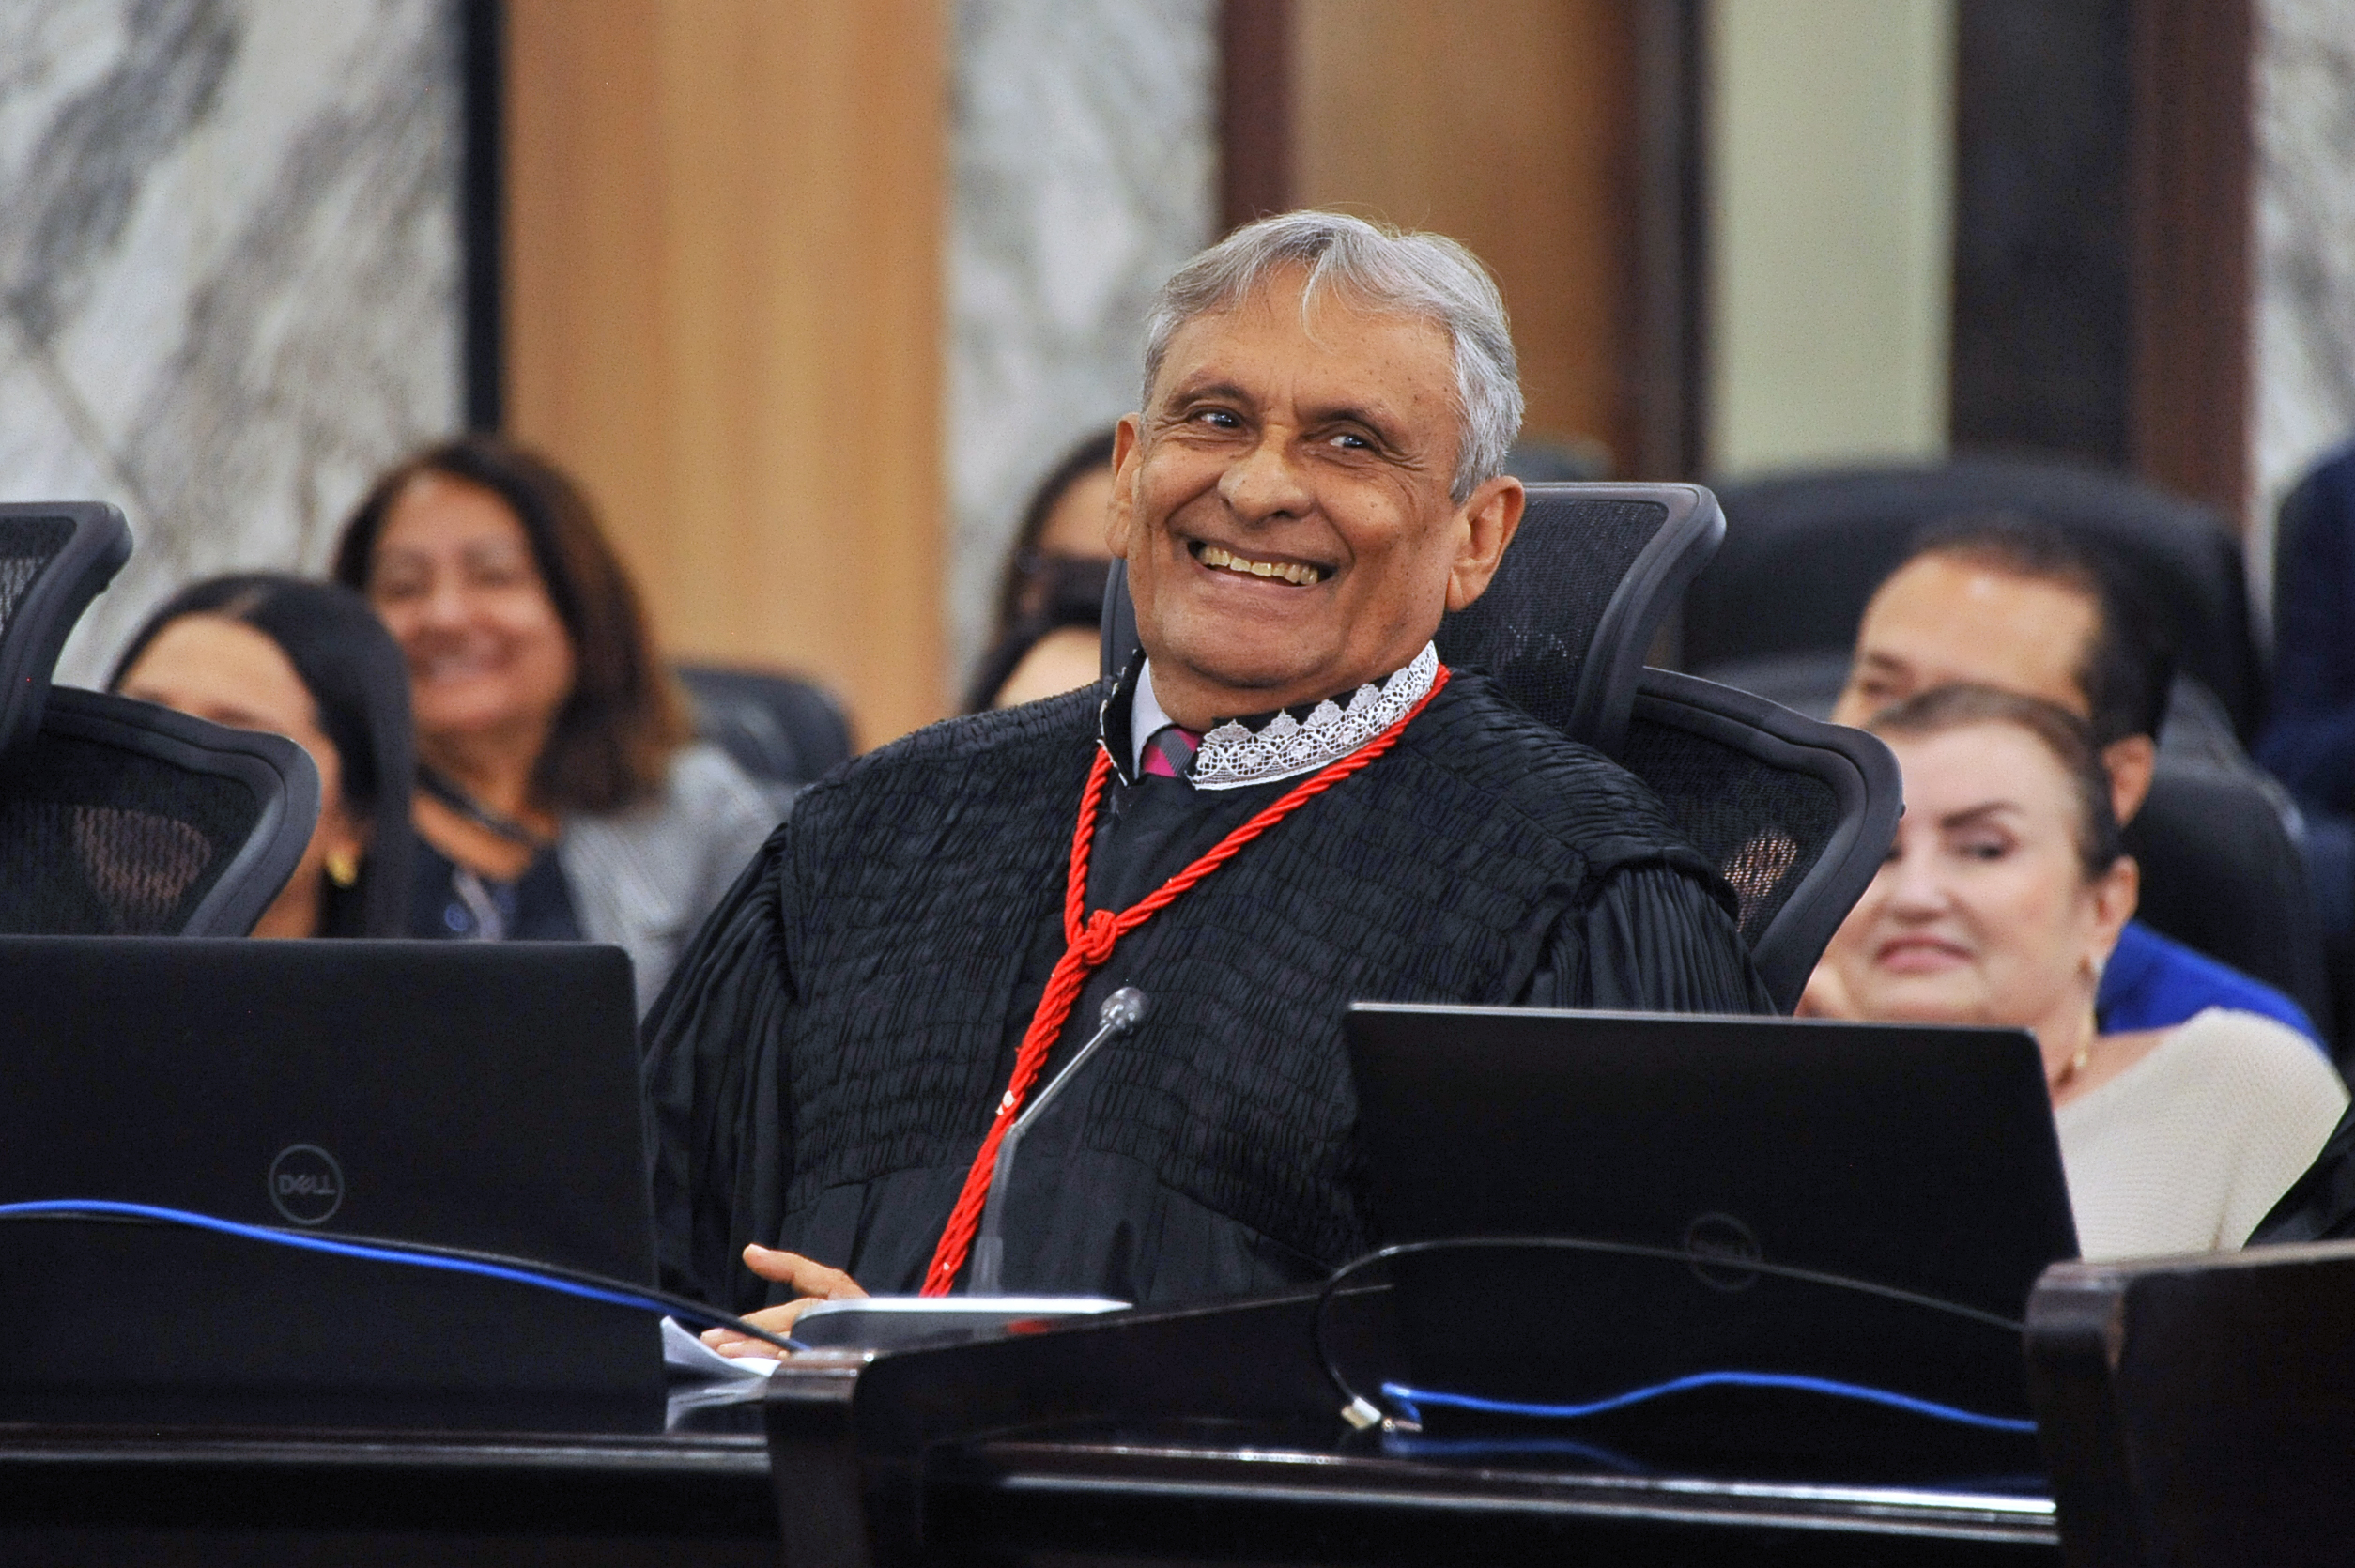 Homem de pele escura, cabelos grilhasos e idade senil, usando toga e sorrindo, sentado na cadeira de desembargadores do Pleno do Tribunal de Justiça. Ao fundo, do lado direito, mulher sentada rindo.